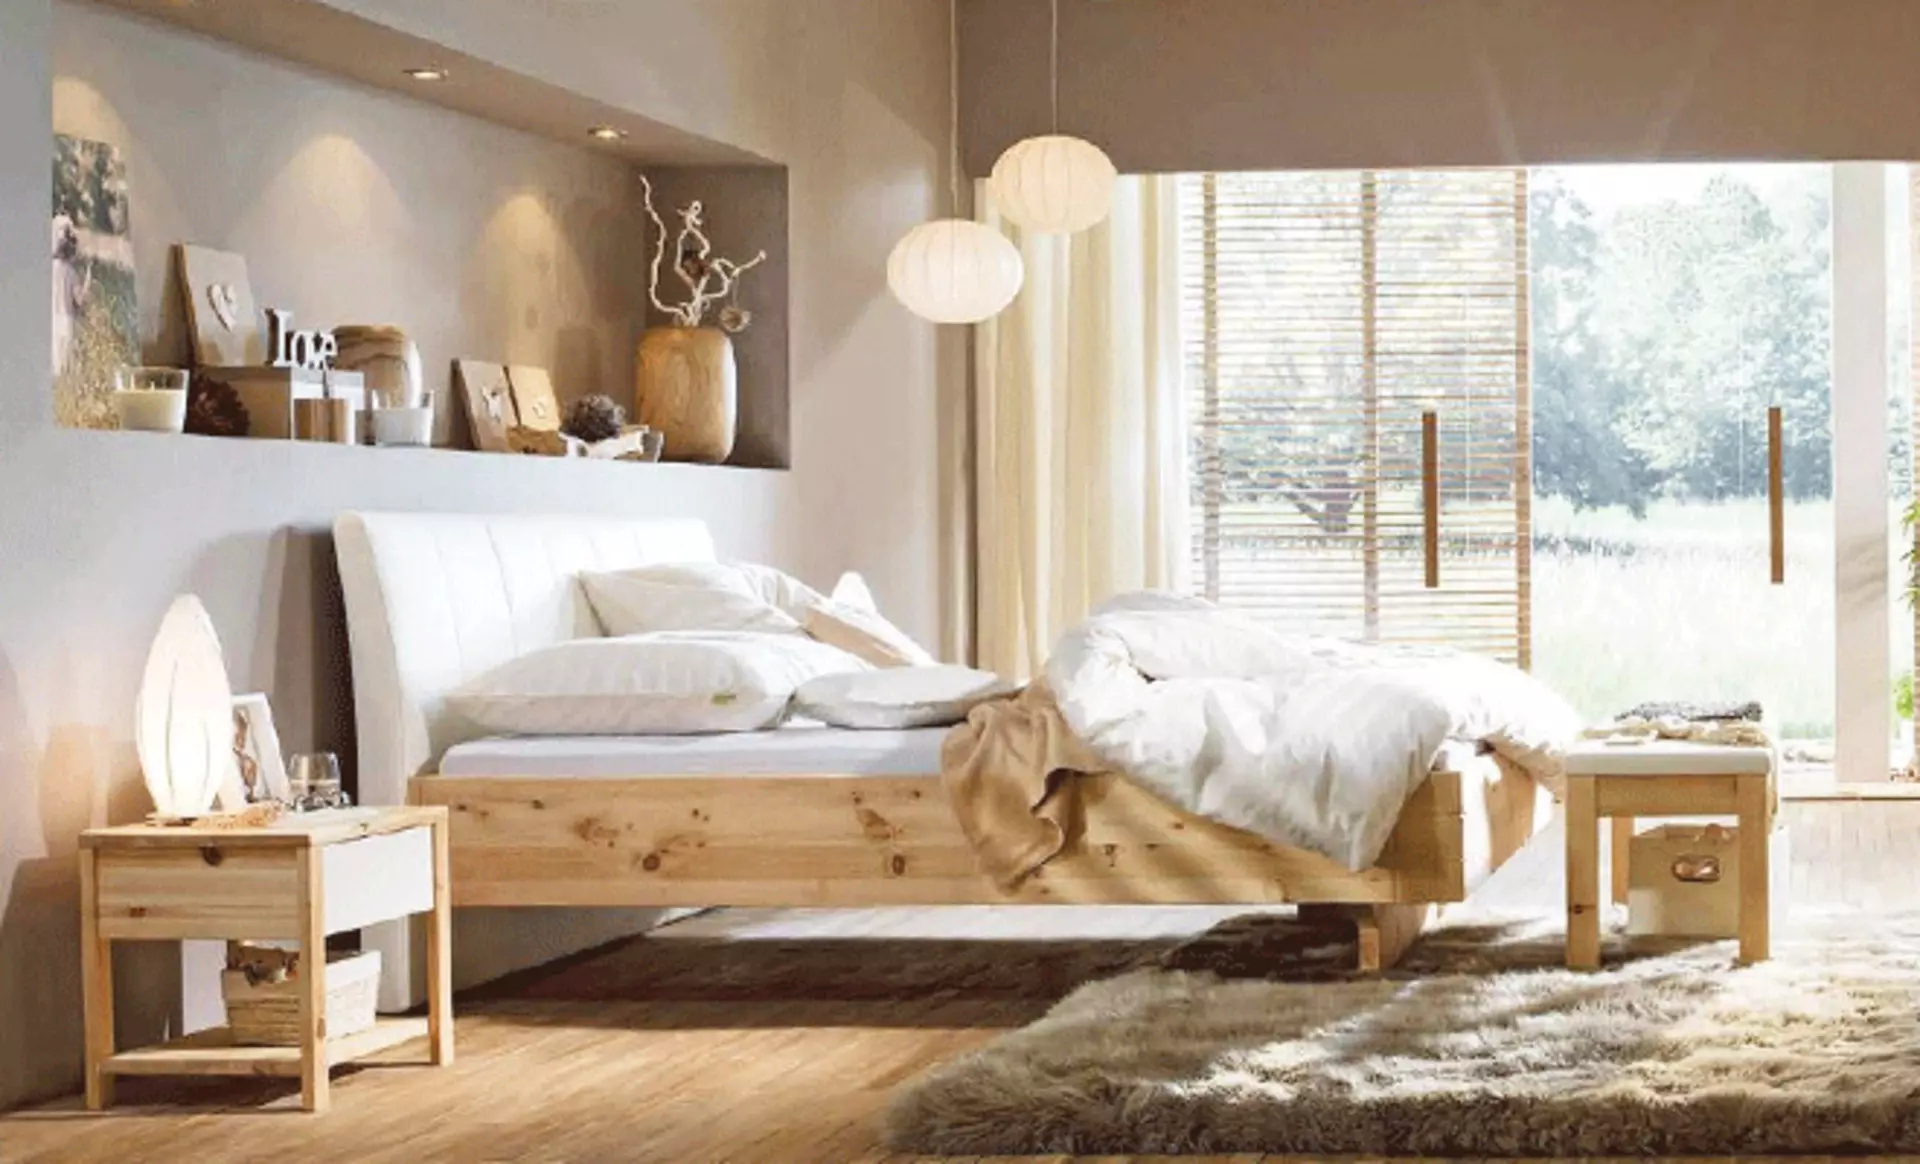 Schlafzimmerausschnitt im Landhausstil mit Bett und Schränken aus naturbelassenem Holz. Die Wand ist in warmem Beige gestrichen und auf dem Boden liegt ein flauschiger Hochflorteppich in dunklerem Beige.